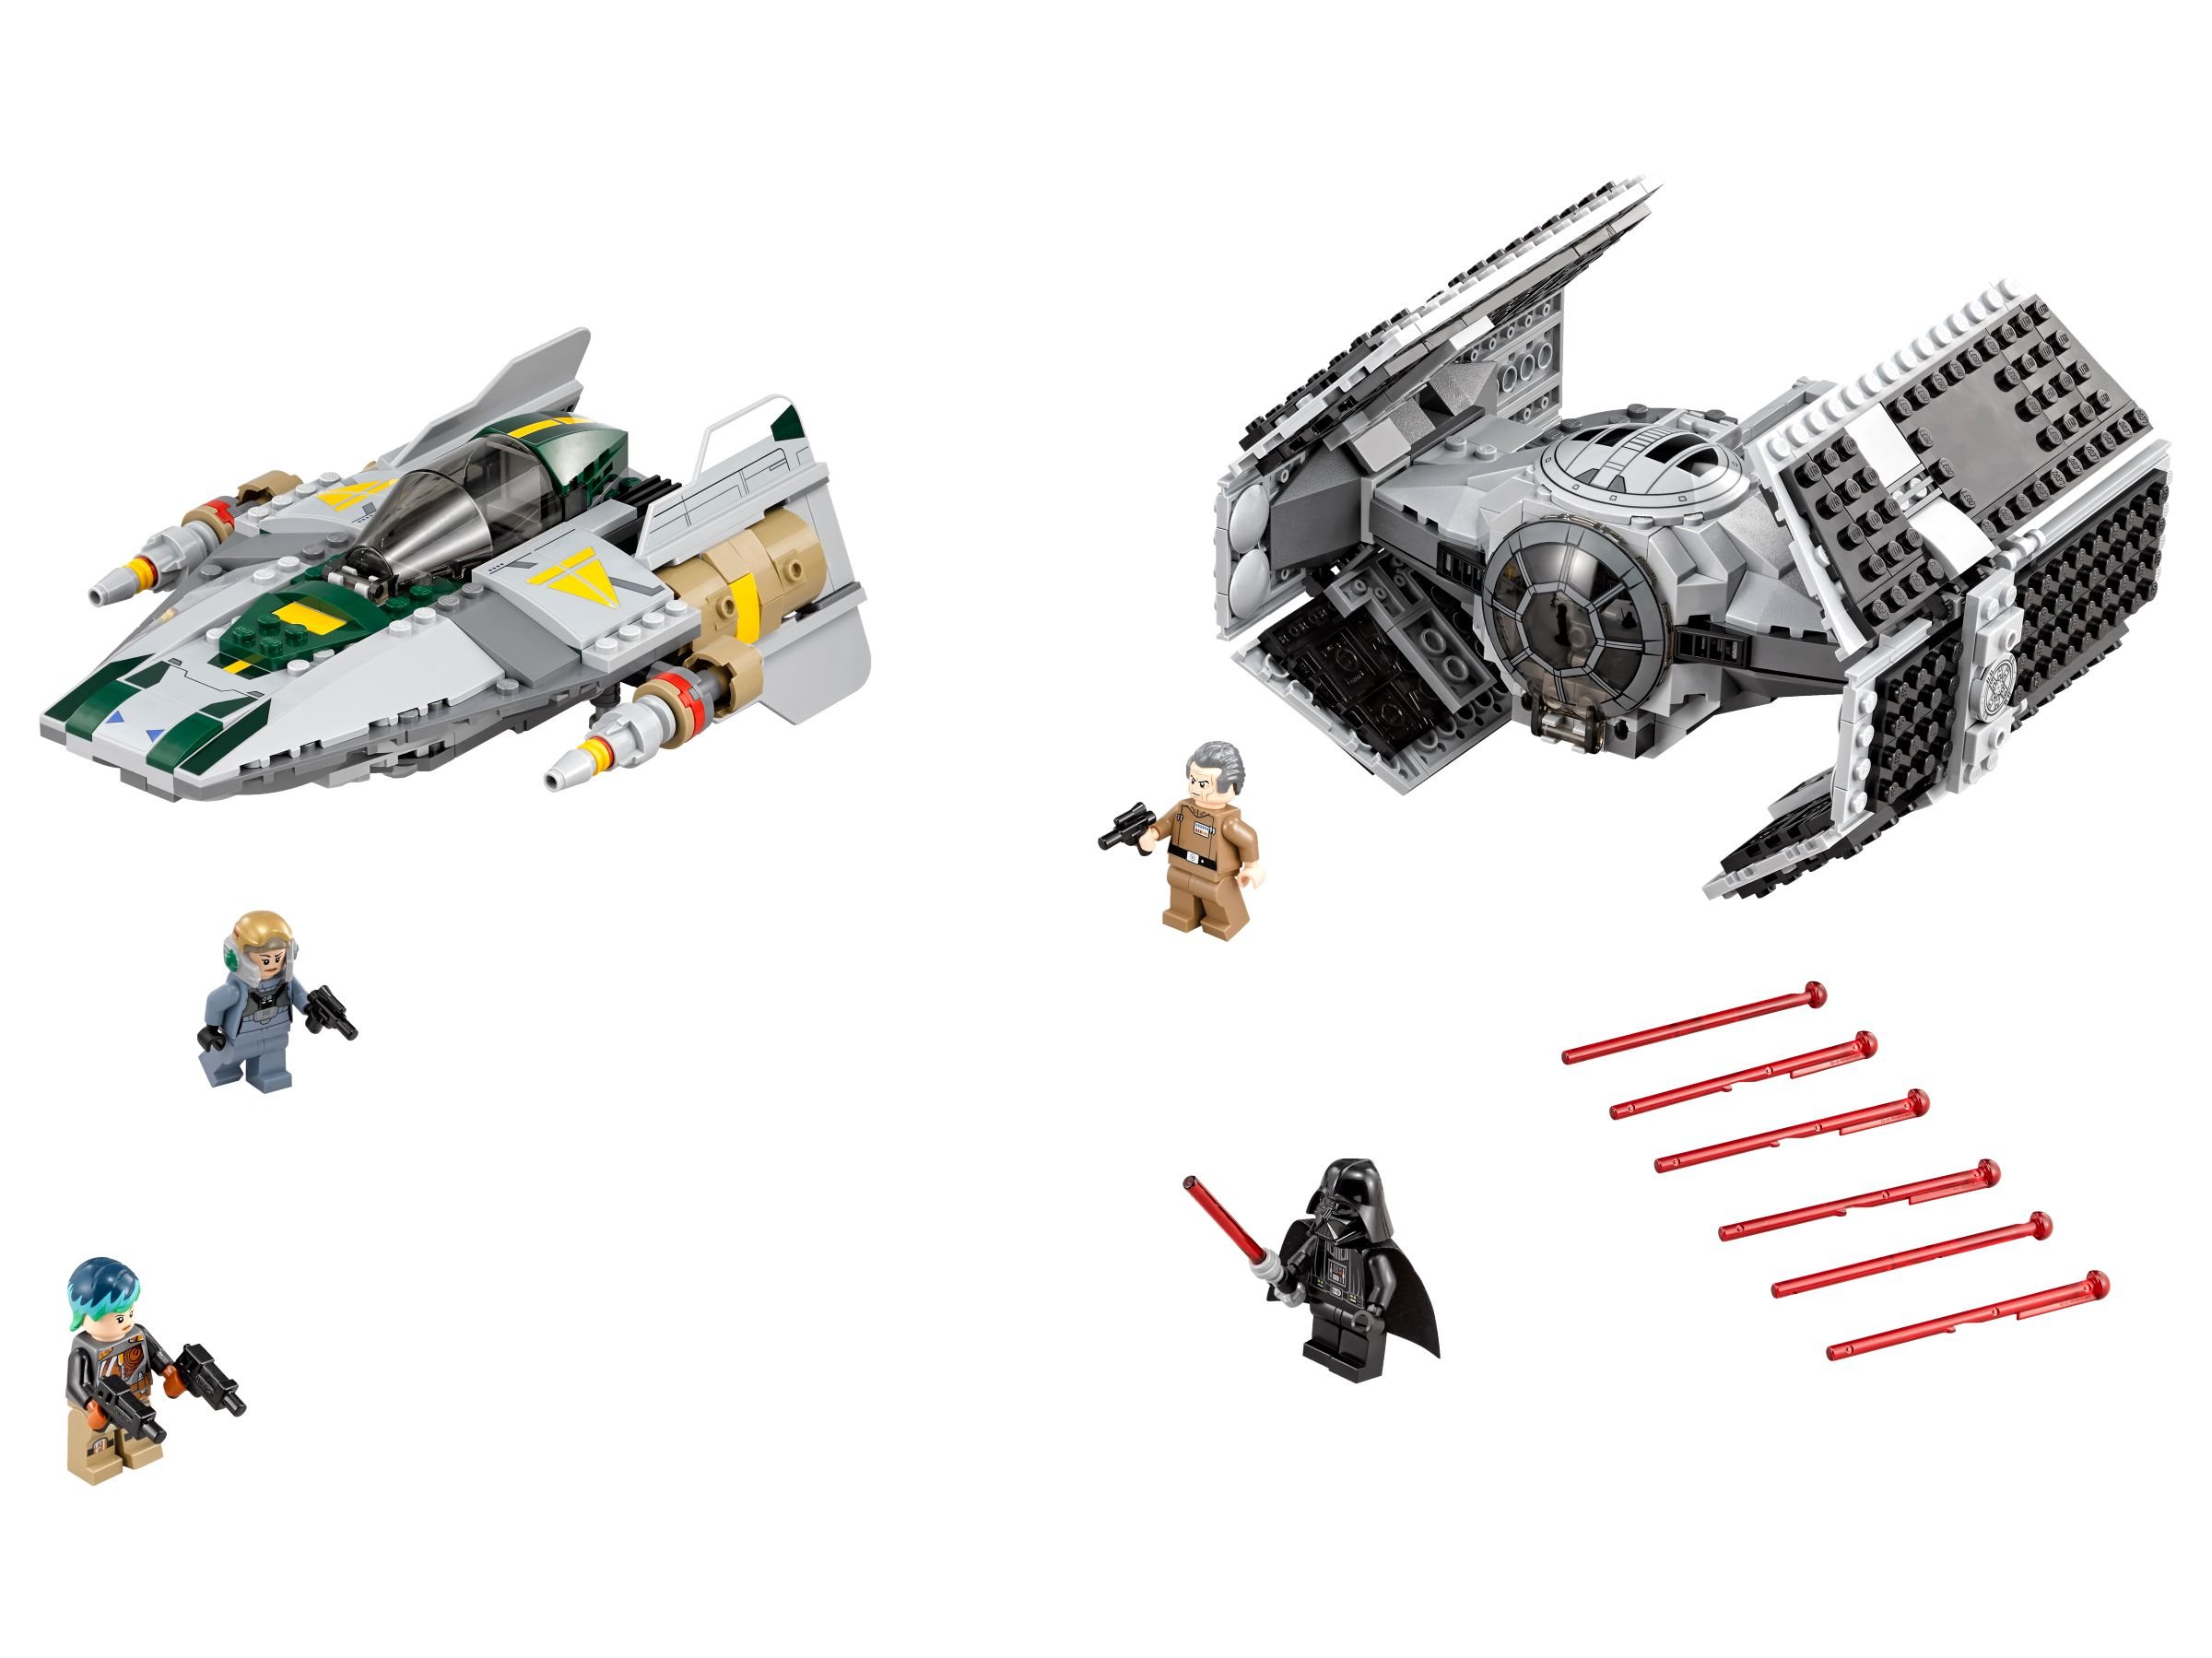 LEGO Star Wars 75150 Vader's TIE Advanced vs. A-Wing Starfighter LEGO_75150.jpg